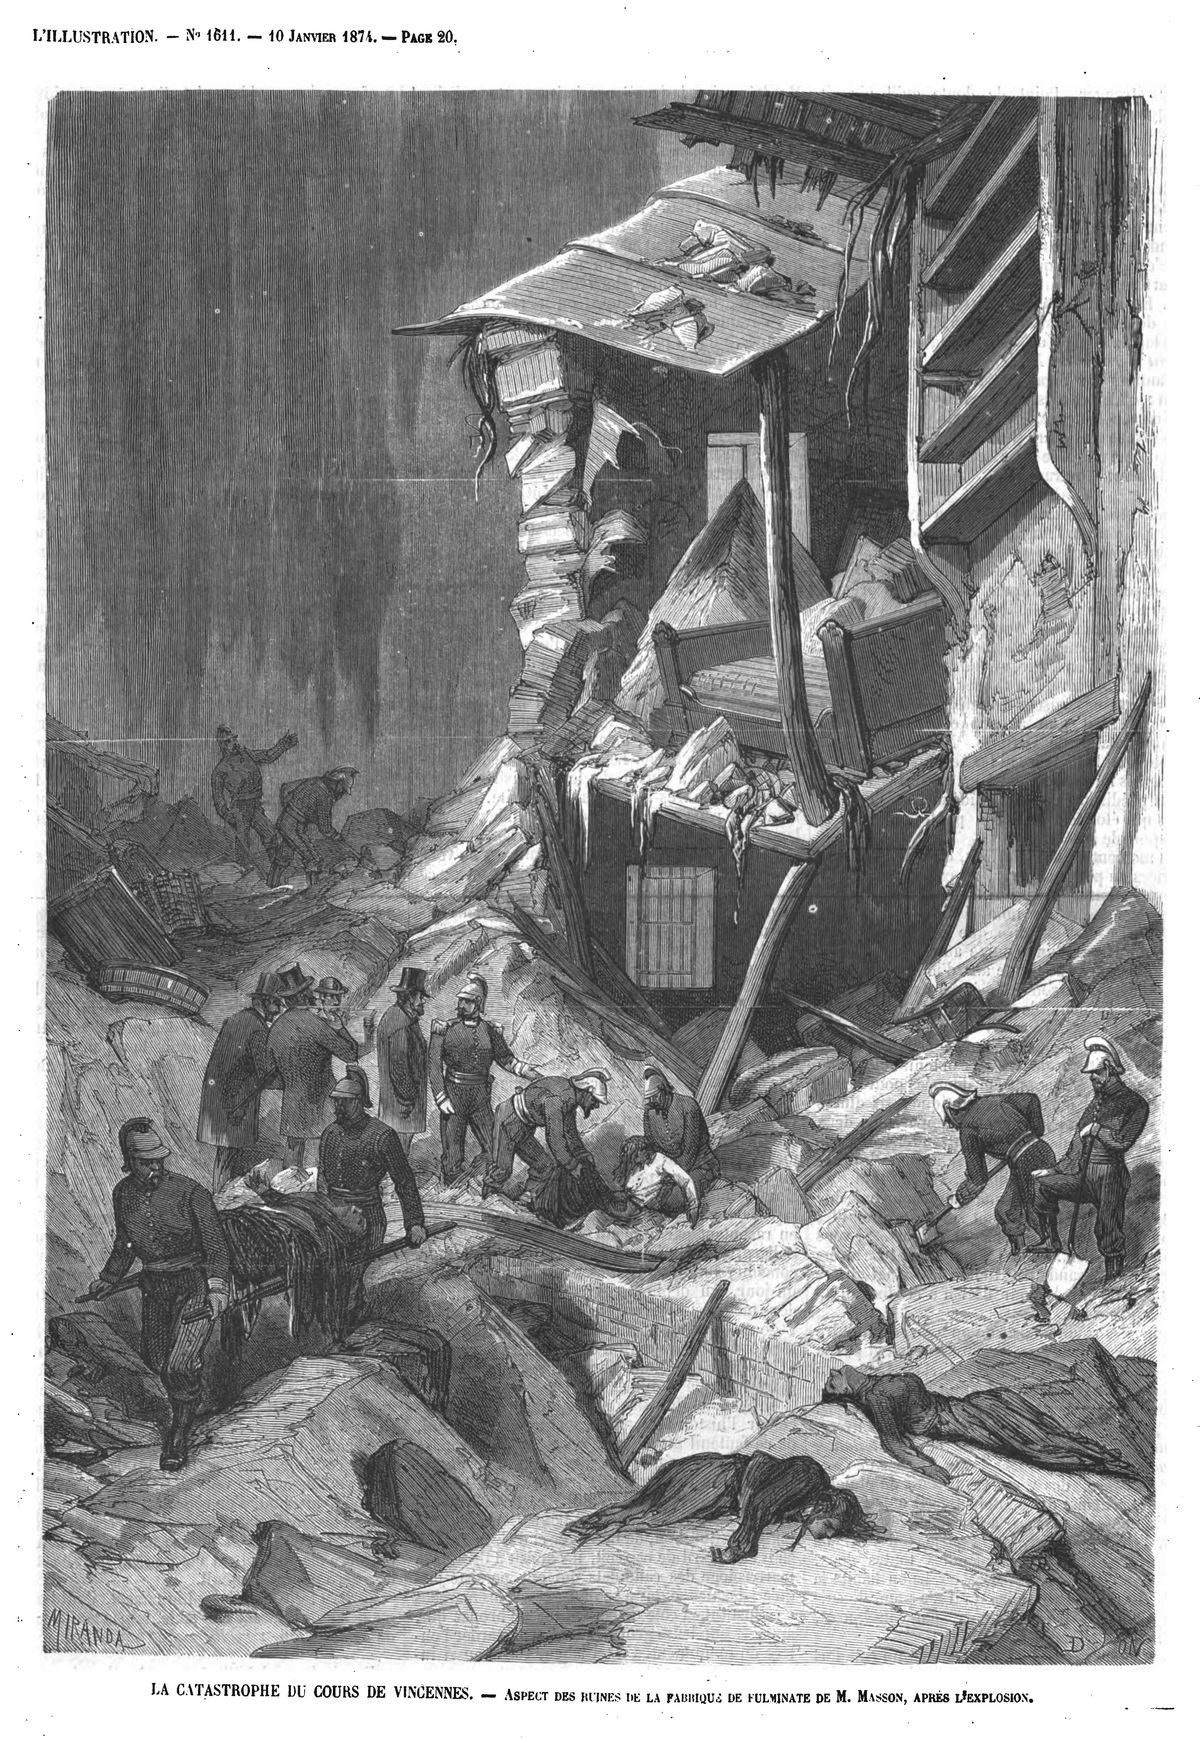 La catastrophe du cours de Vincennes : aspect des ruines de la fabrique de fulminate après l’explosion. 1874